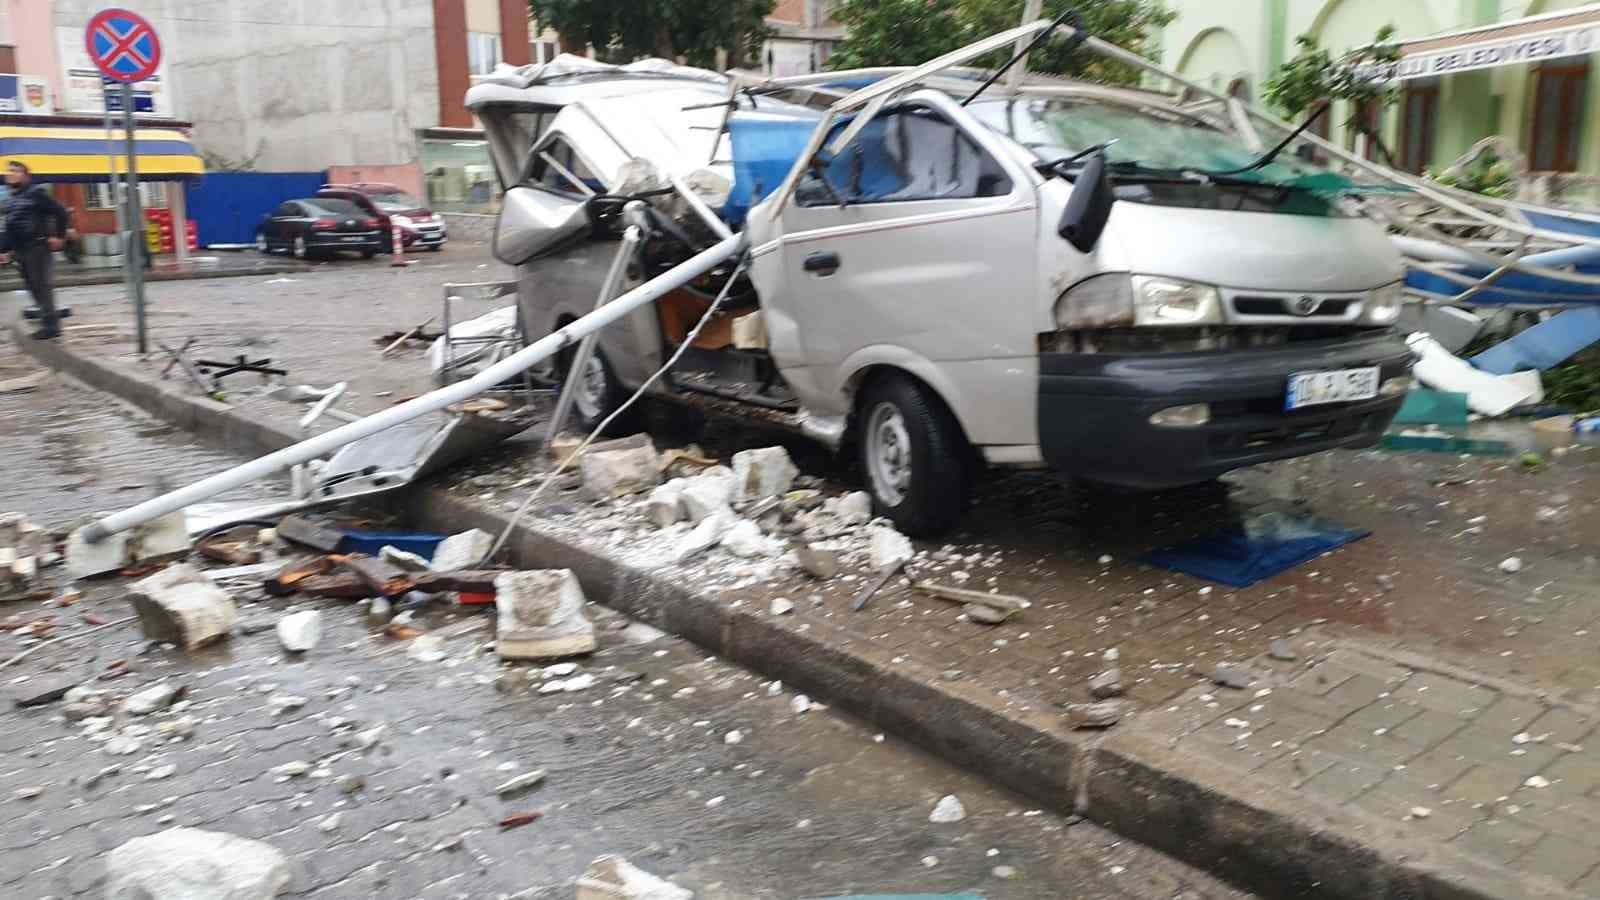 Valilikten, fırtına raporu: 7 kişi yaralandı #aydin